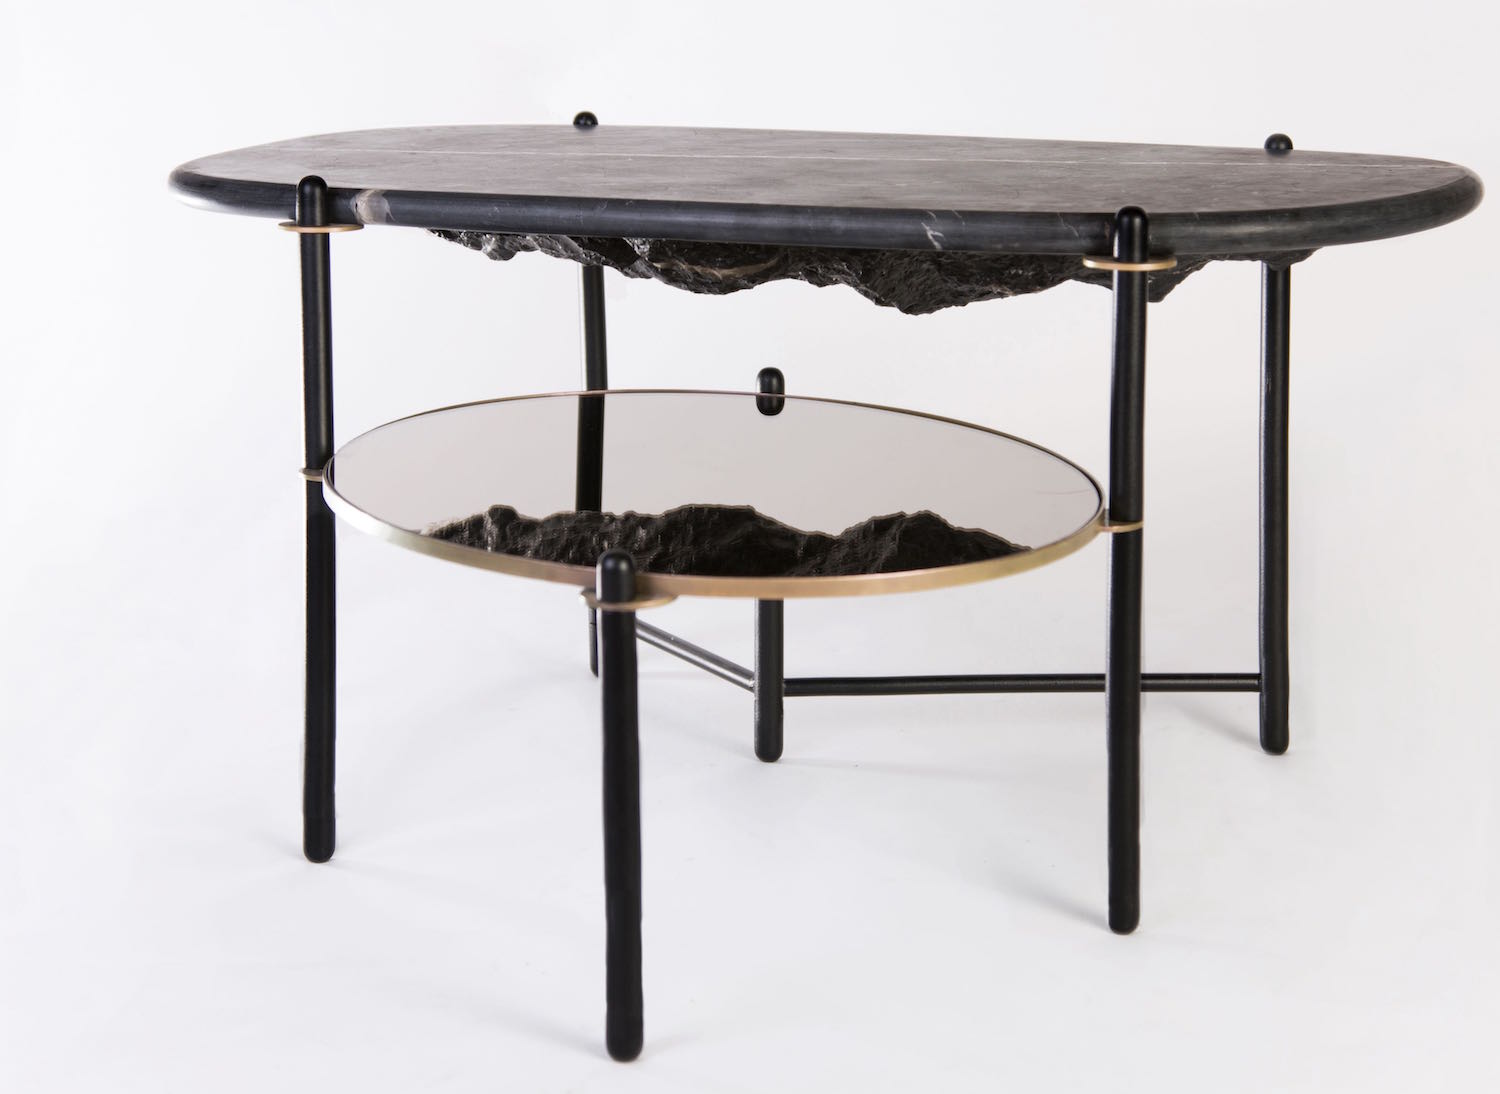 Binomios coffee table by Comité de Proyectos | Flodeau.com